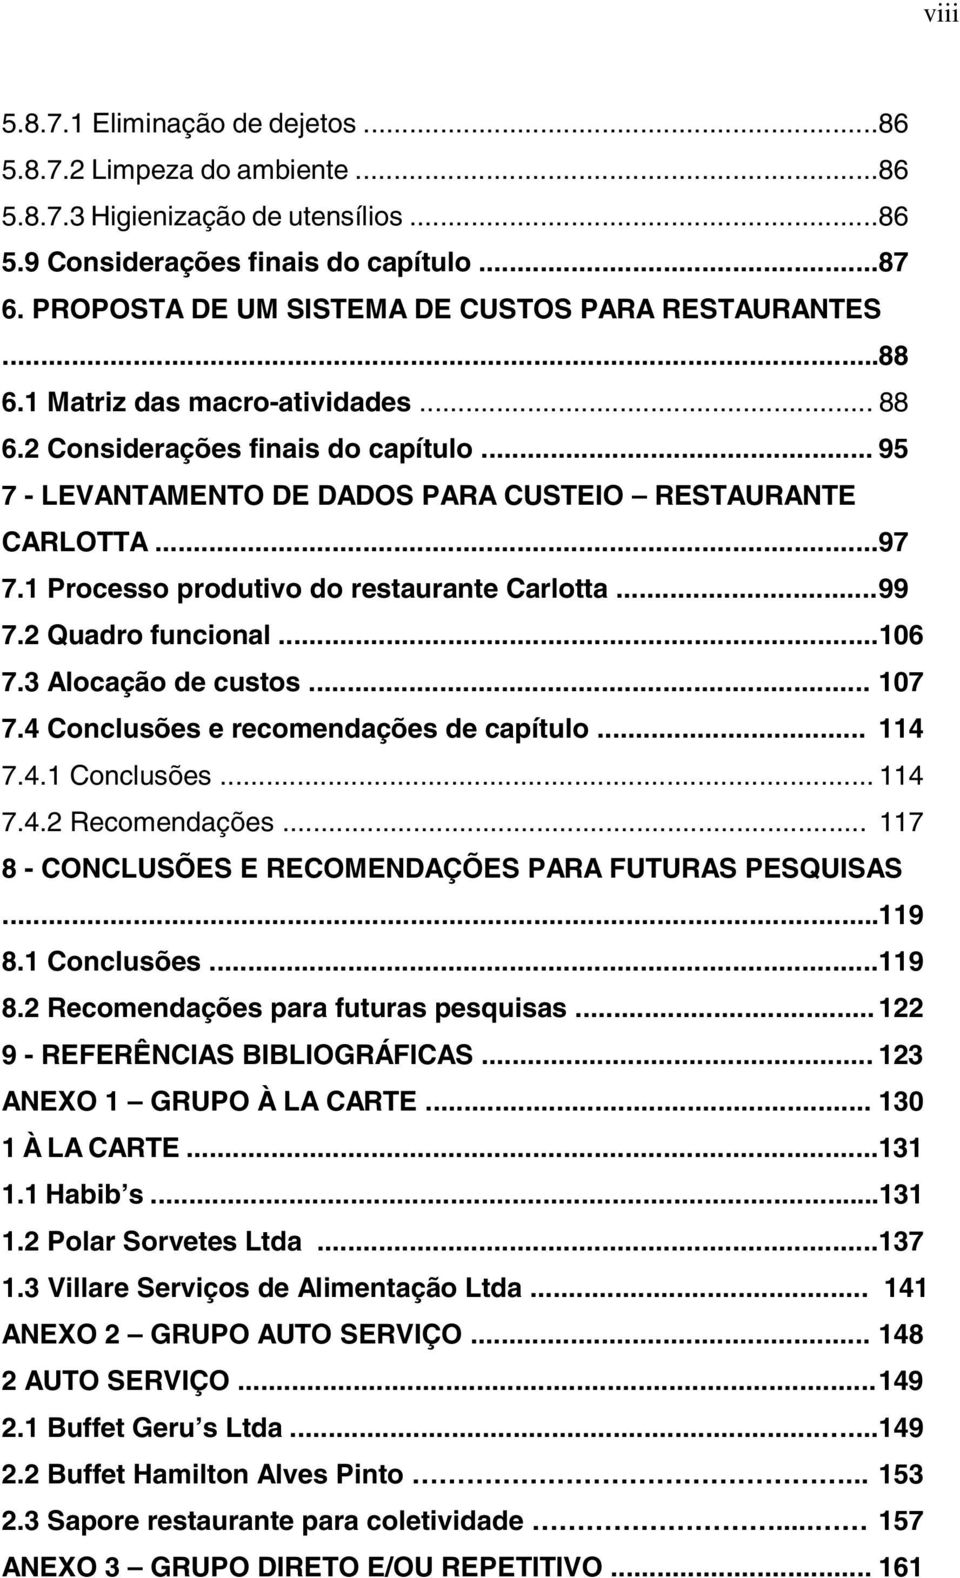 ..97 7.1 Processo produtivo do restaurante Carlotta... 99 7.2 Quadro funcional...106 7.3 Alocação de custos... 107 7.4 Conclusões e recomendações de capítulo... 114 7.4.1 Conclusões... 114 7.4.2 Recomendações.